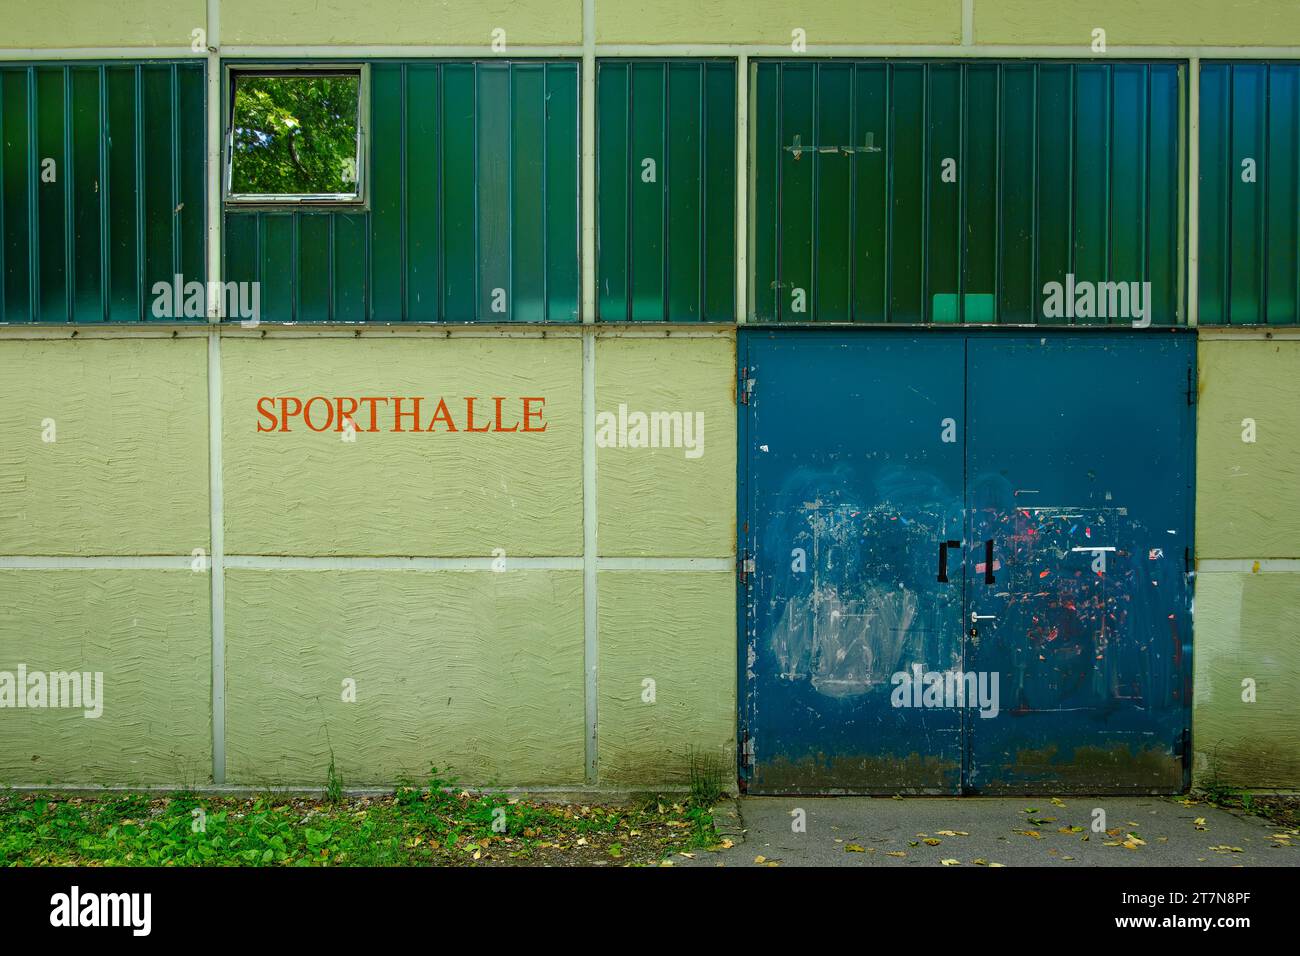 Symbolbild Sporthalle: Außenaufnahme eines Gebäudes mit der Aufschrift SPORTHALLE. Stockfoto